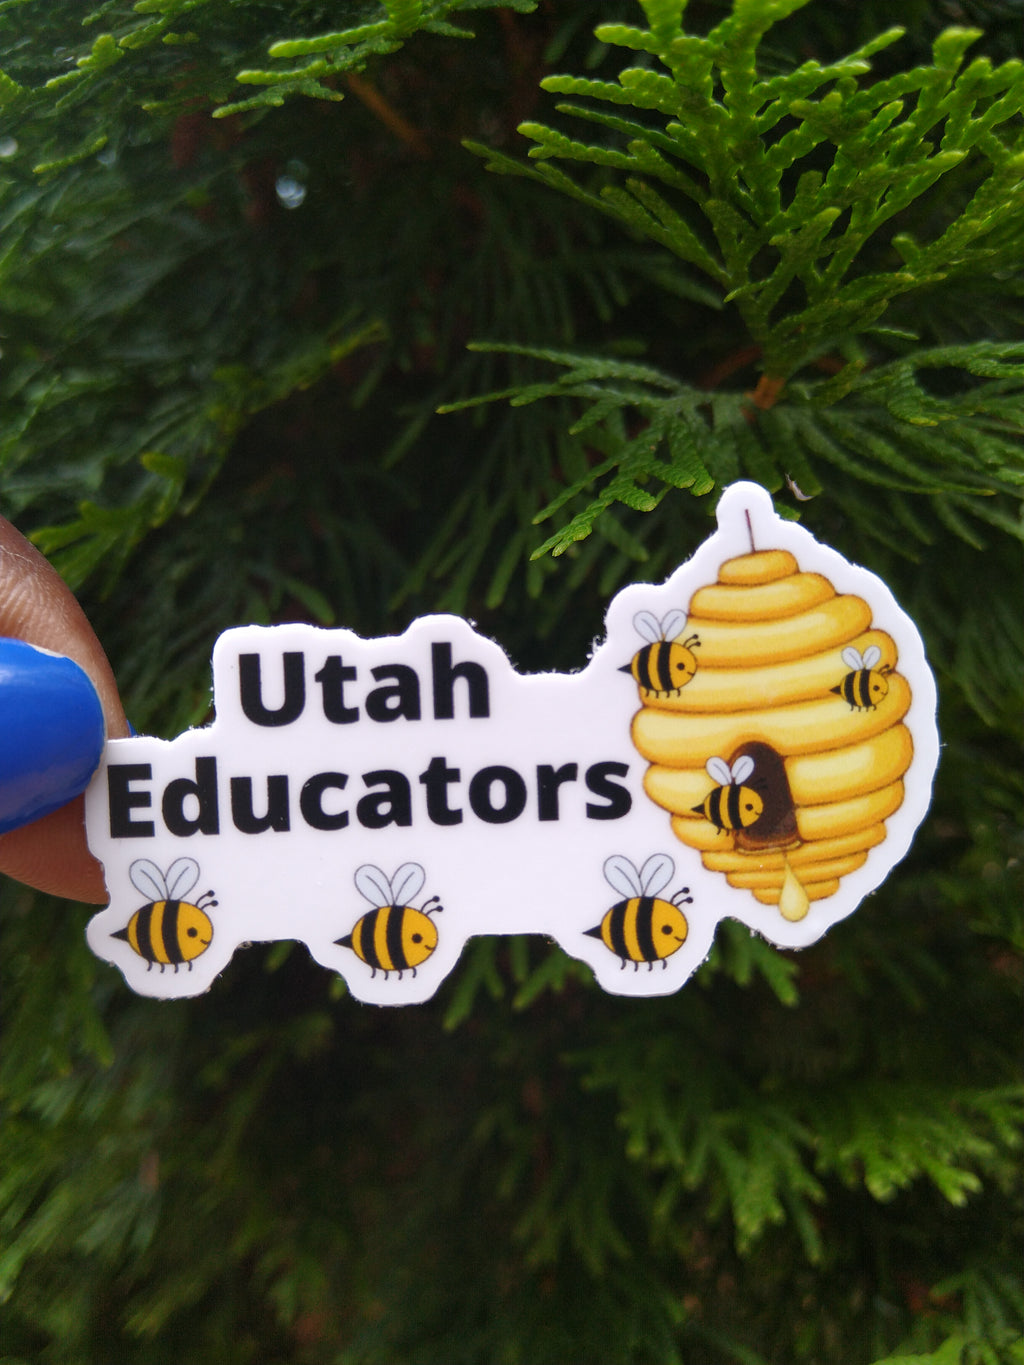 Utah Educators